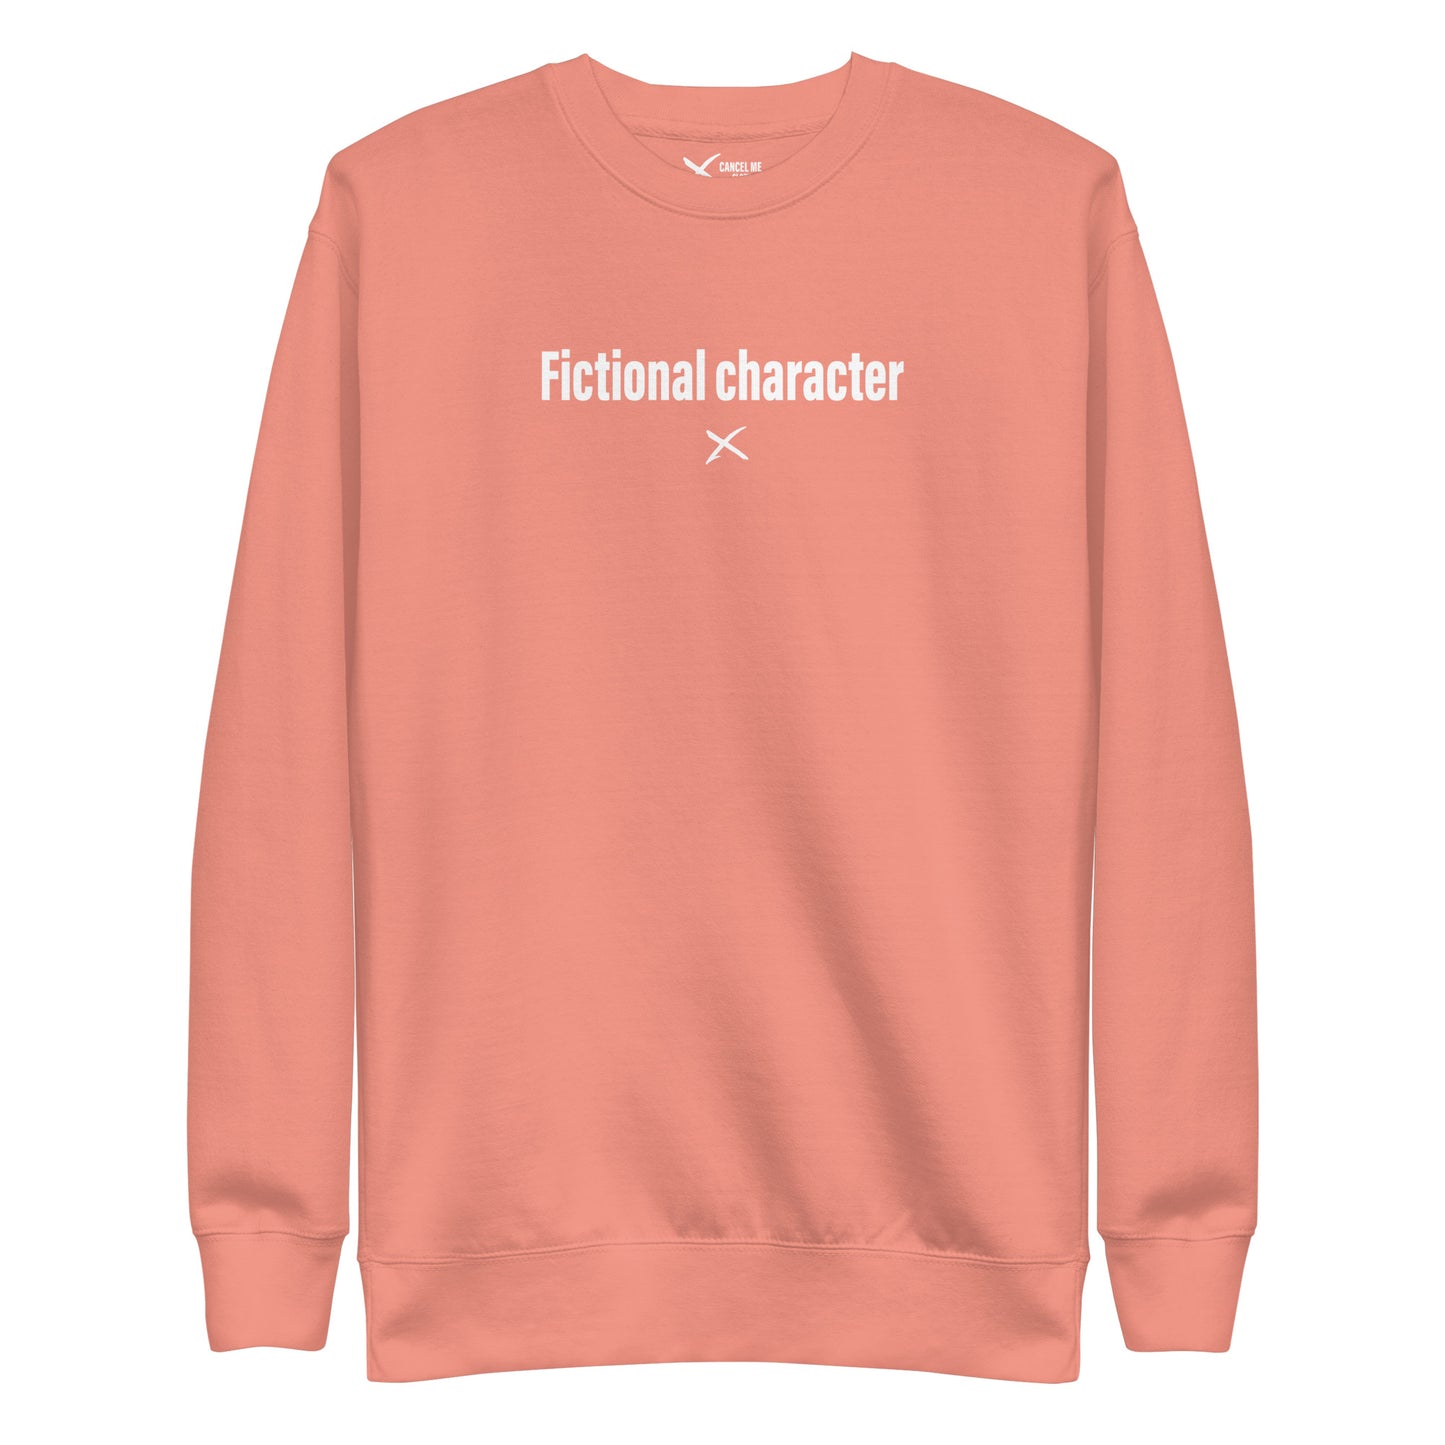 Fictional character - Sweatshirt